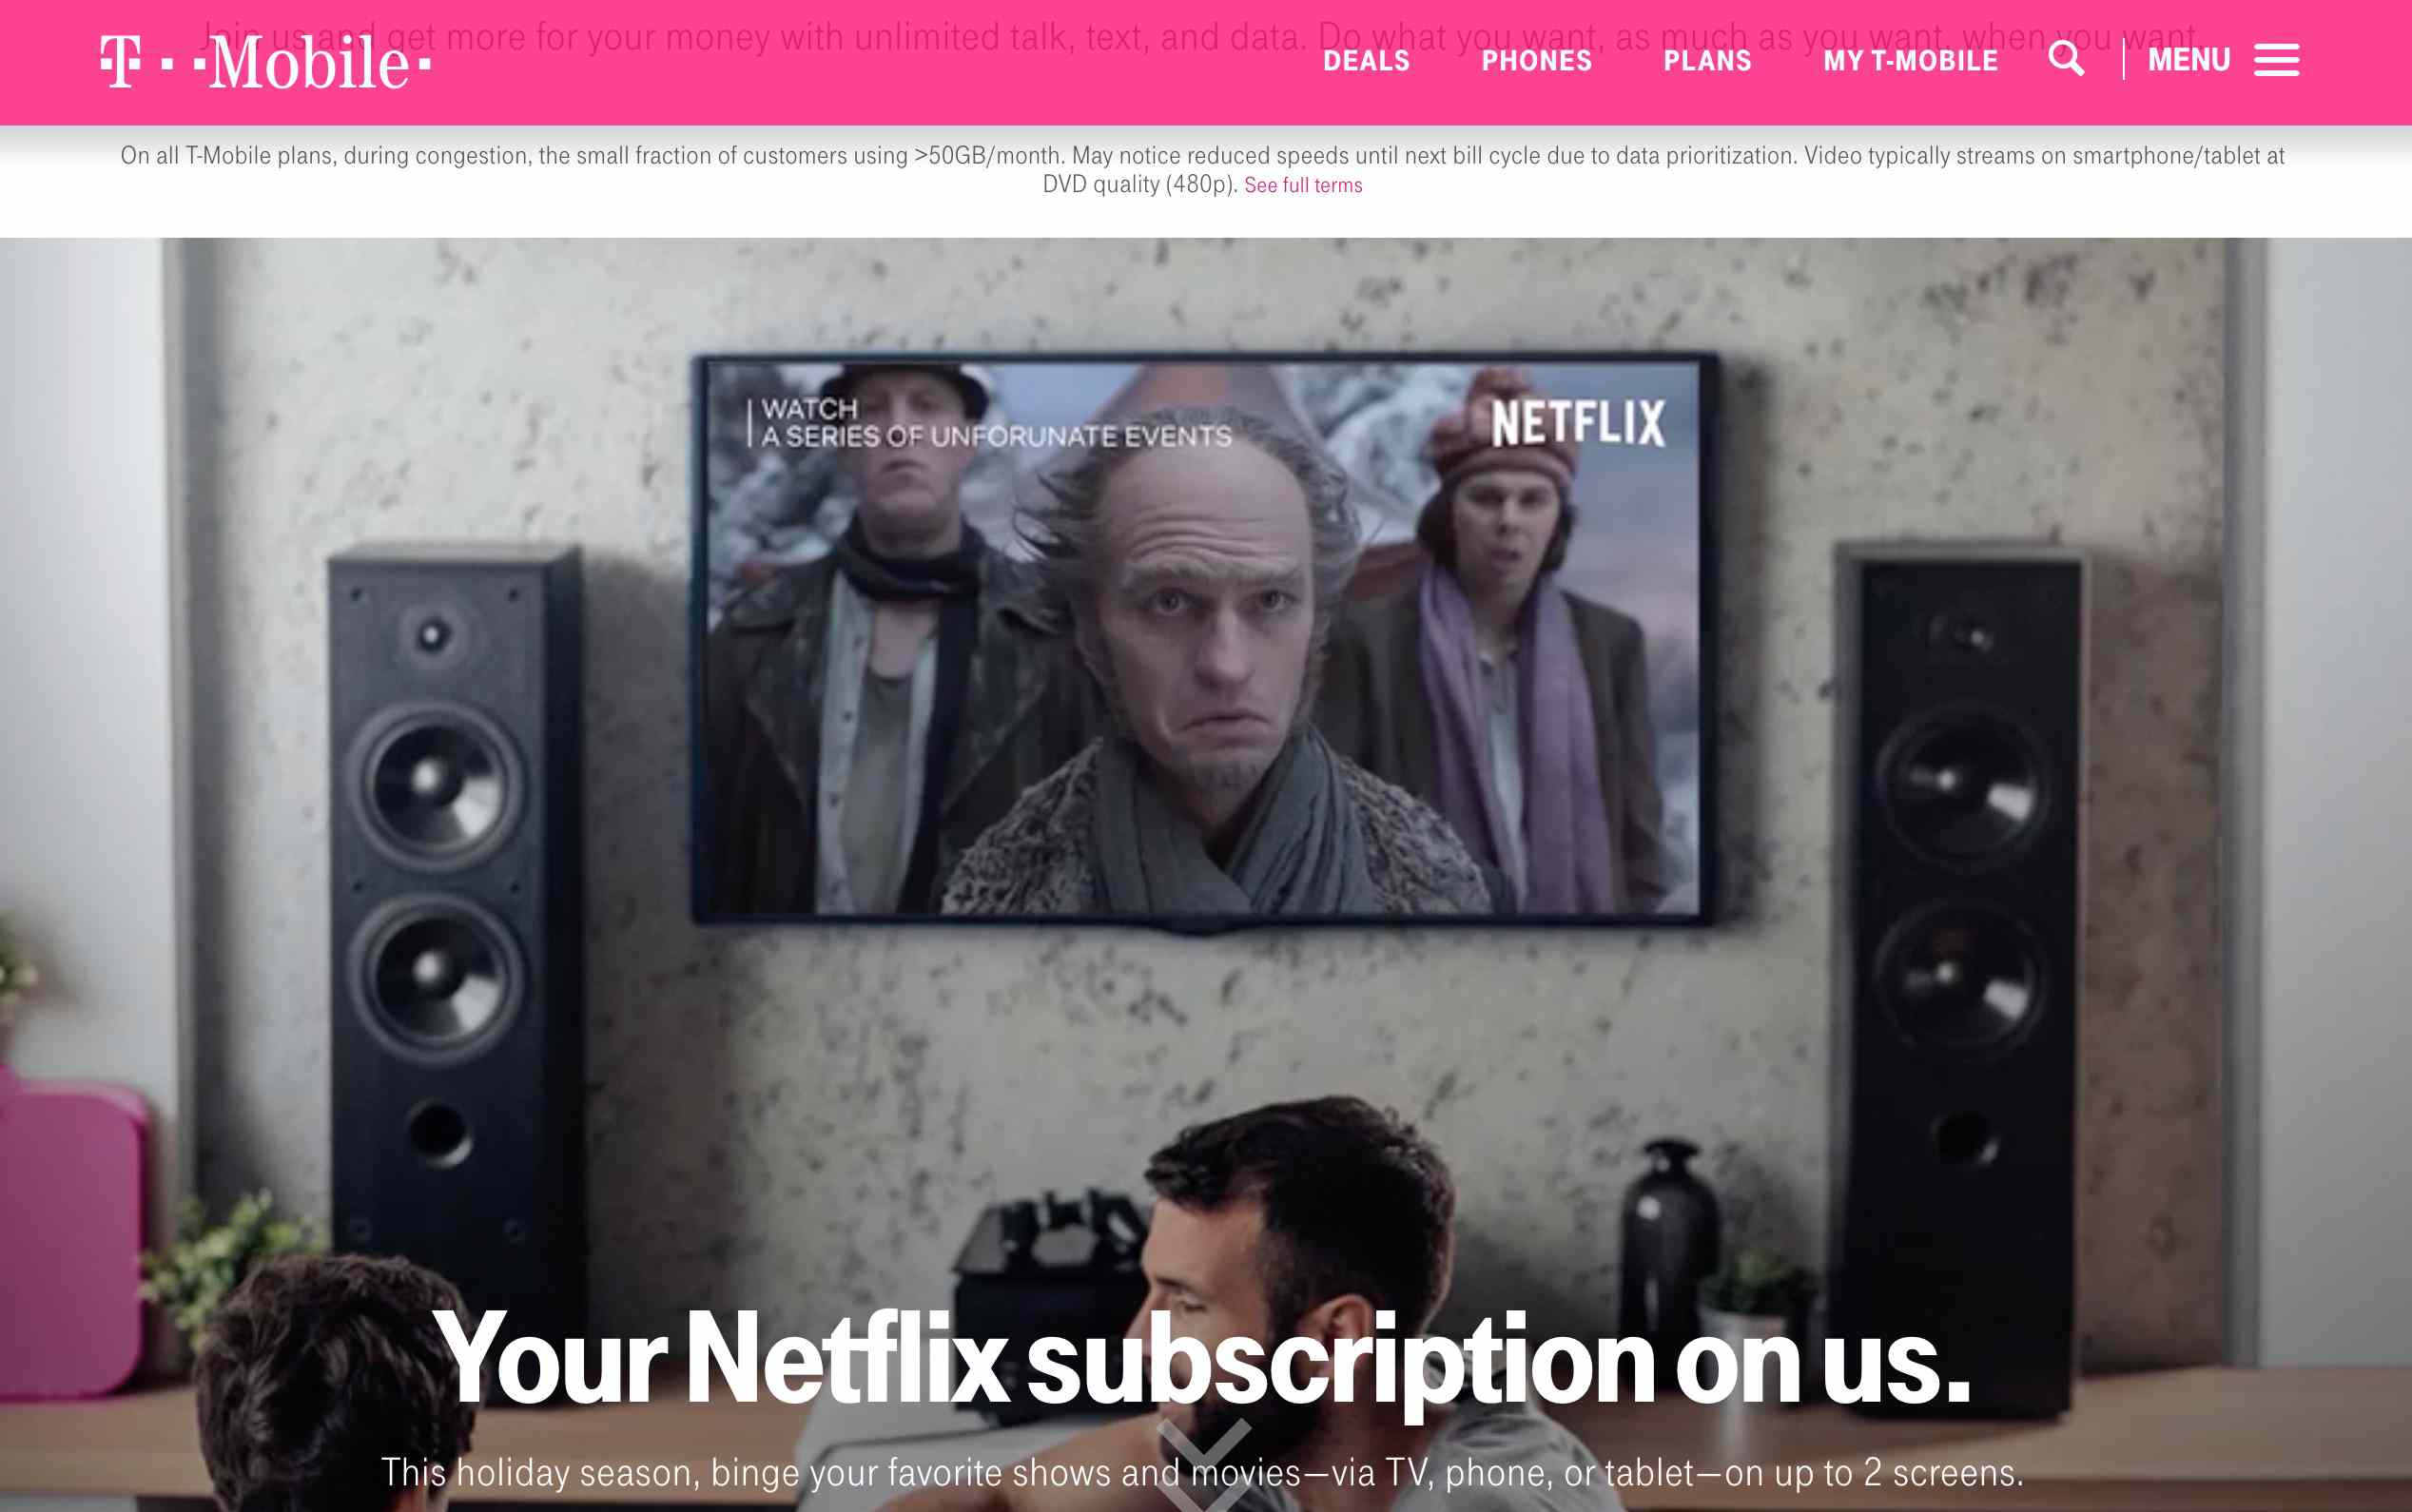 T-Mobile webbsida som visar Netflix-affären